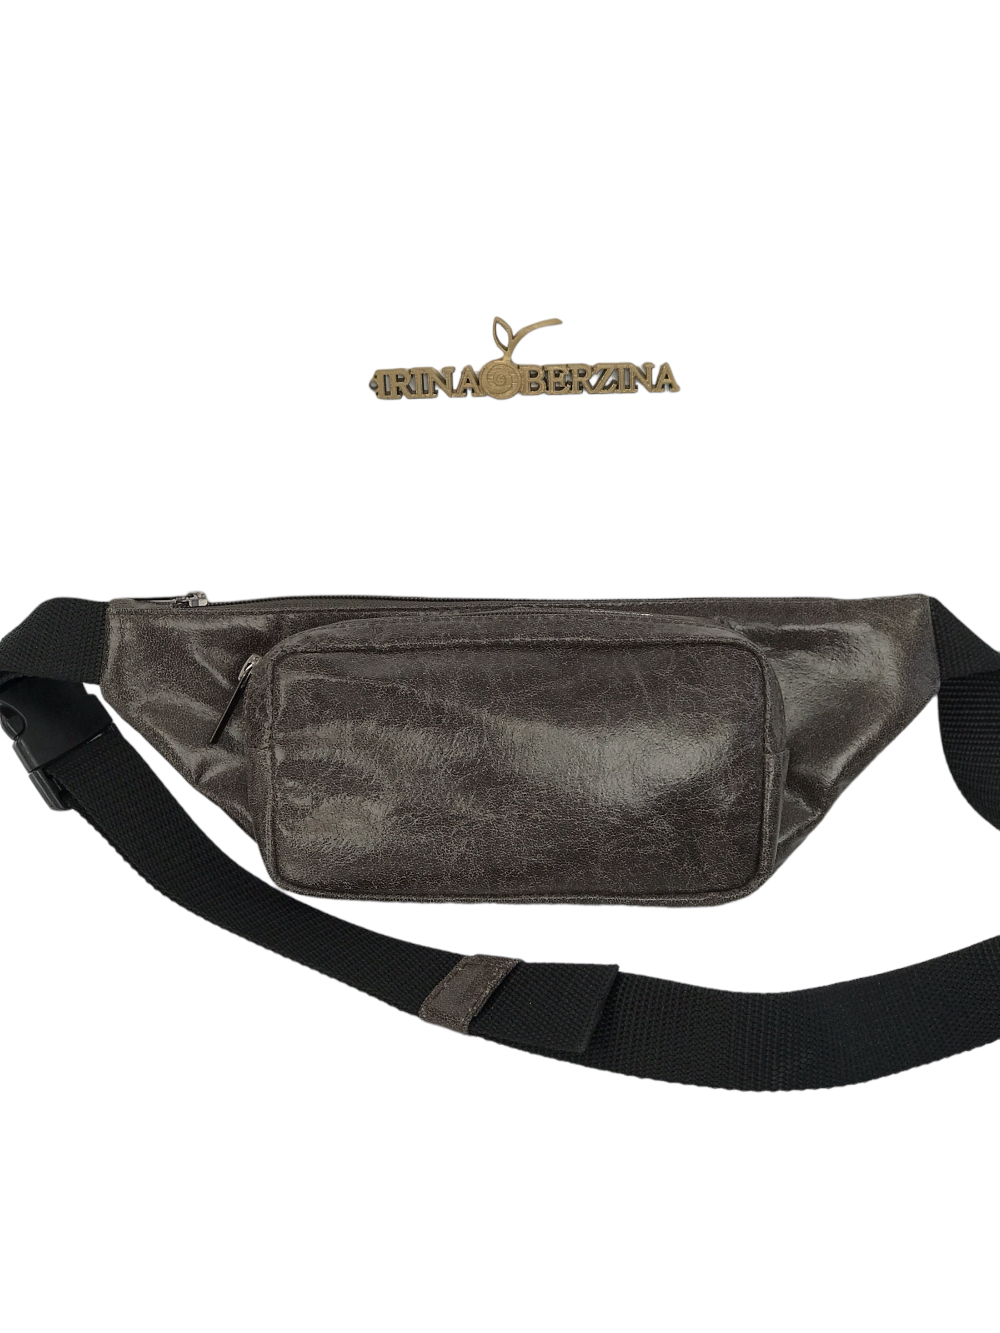 картинка кожаные  Поясная сумка-04 - Кожаная сумка, серый винтаж, унисекс от Ирины Берзиной